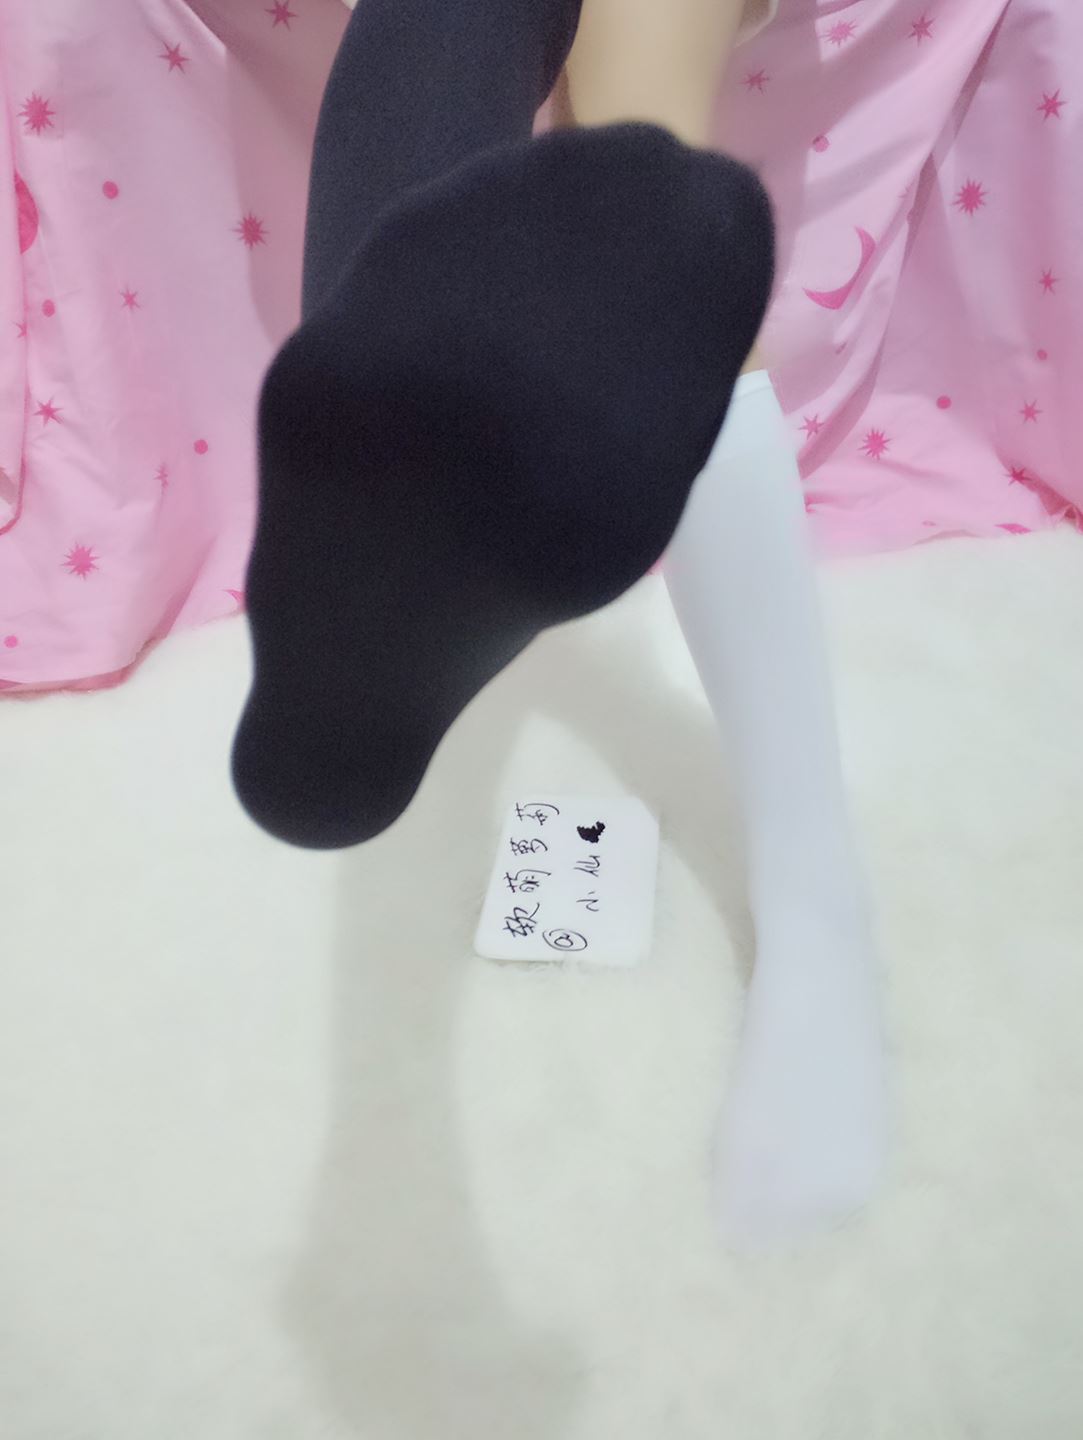 Soft cute 5 black and white socks(5)